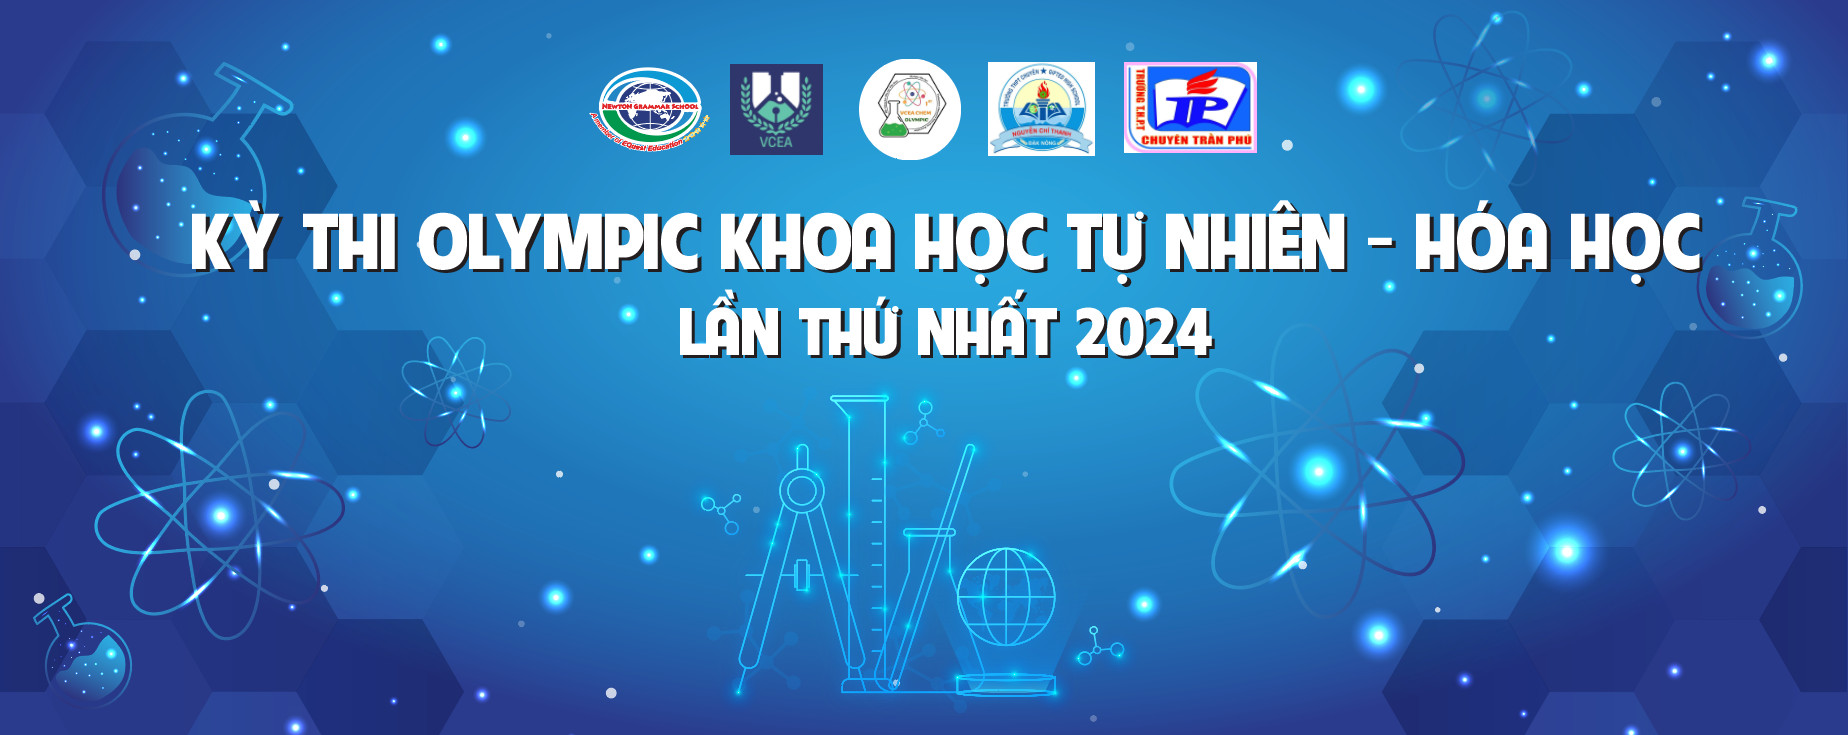 Olympic Khoa học tự nhiên - Hóa học lần thứ nhất năm 2024